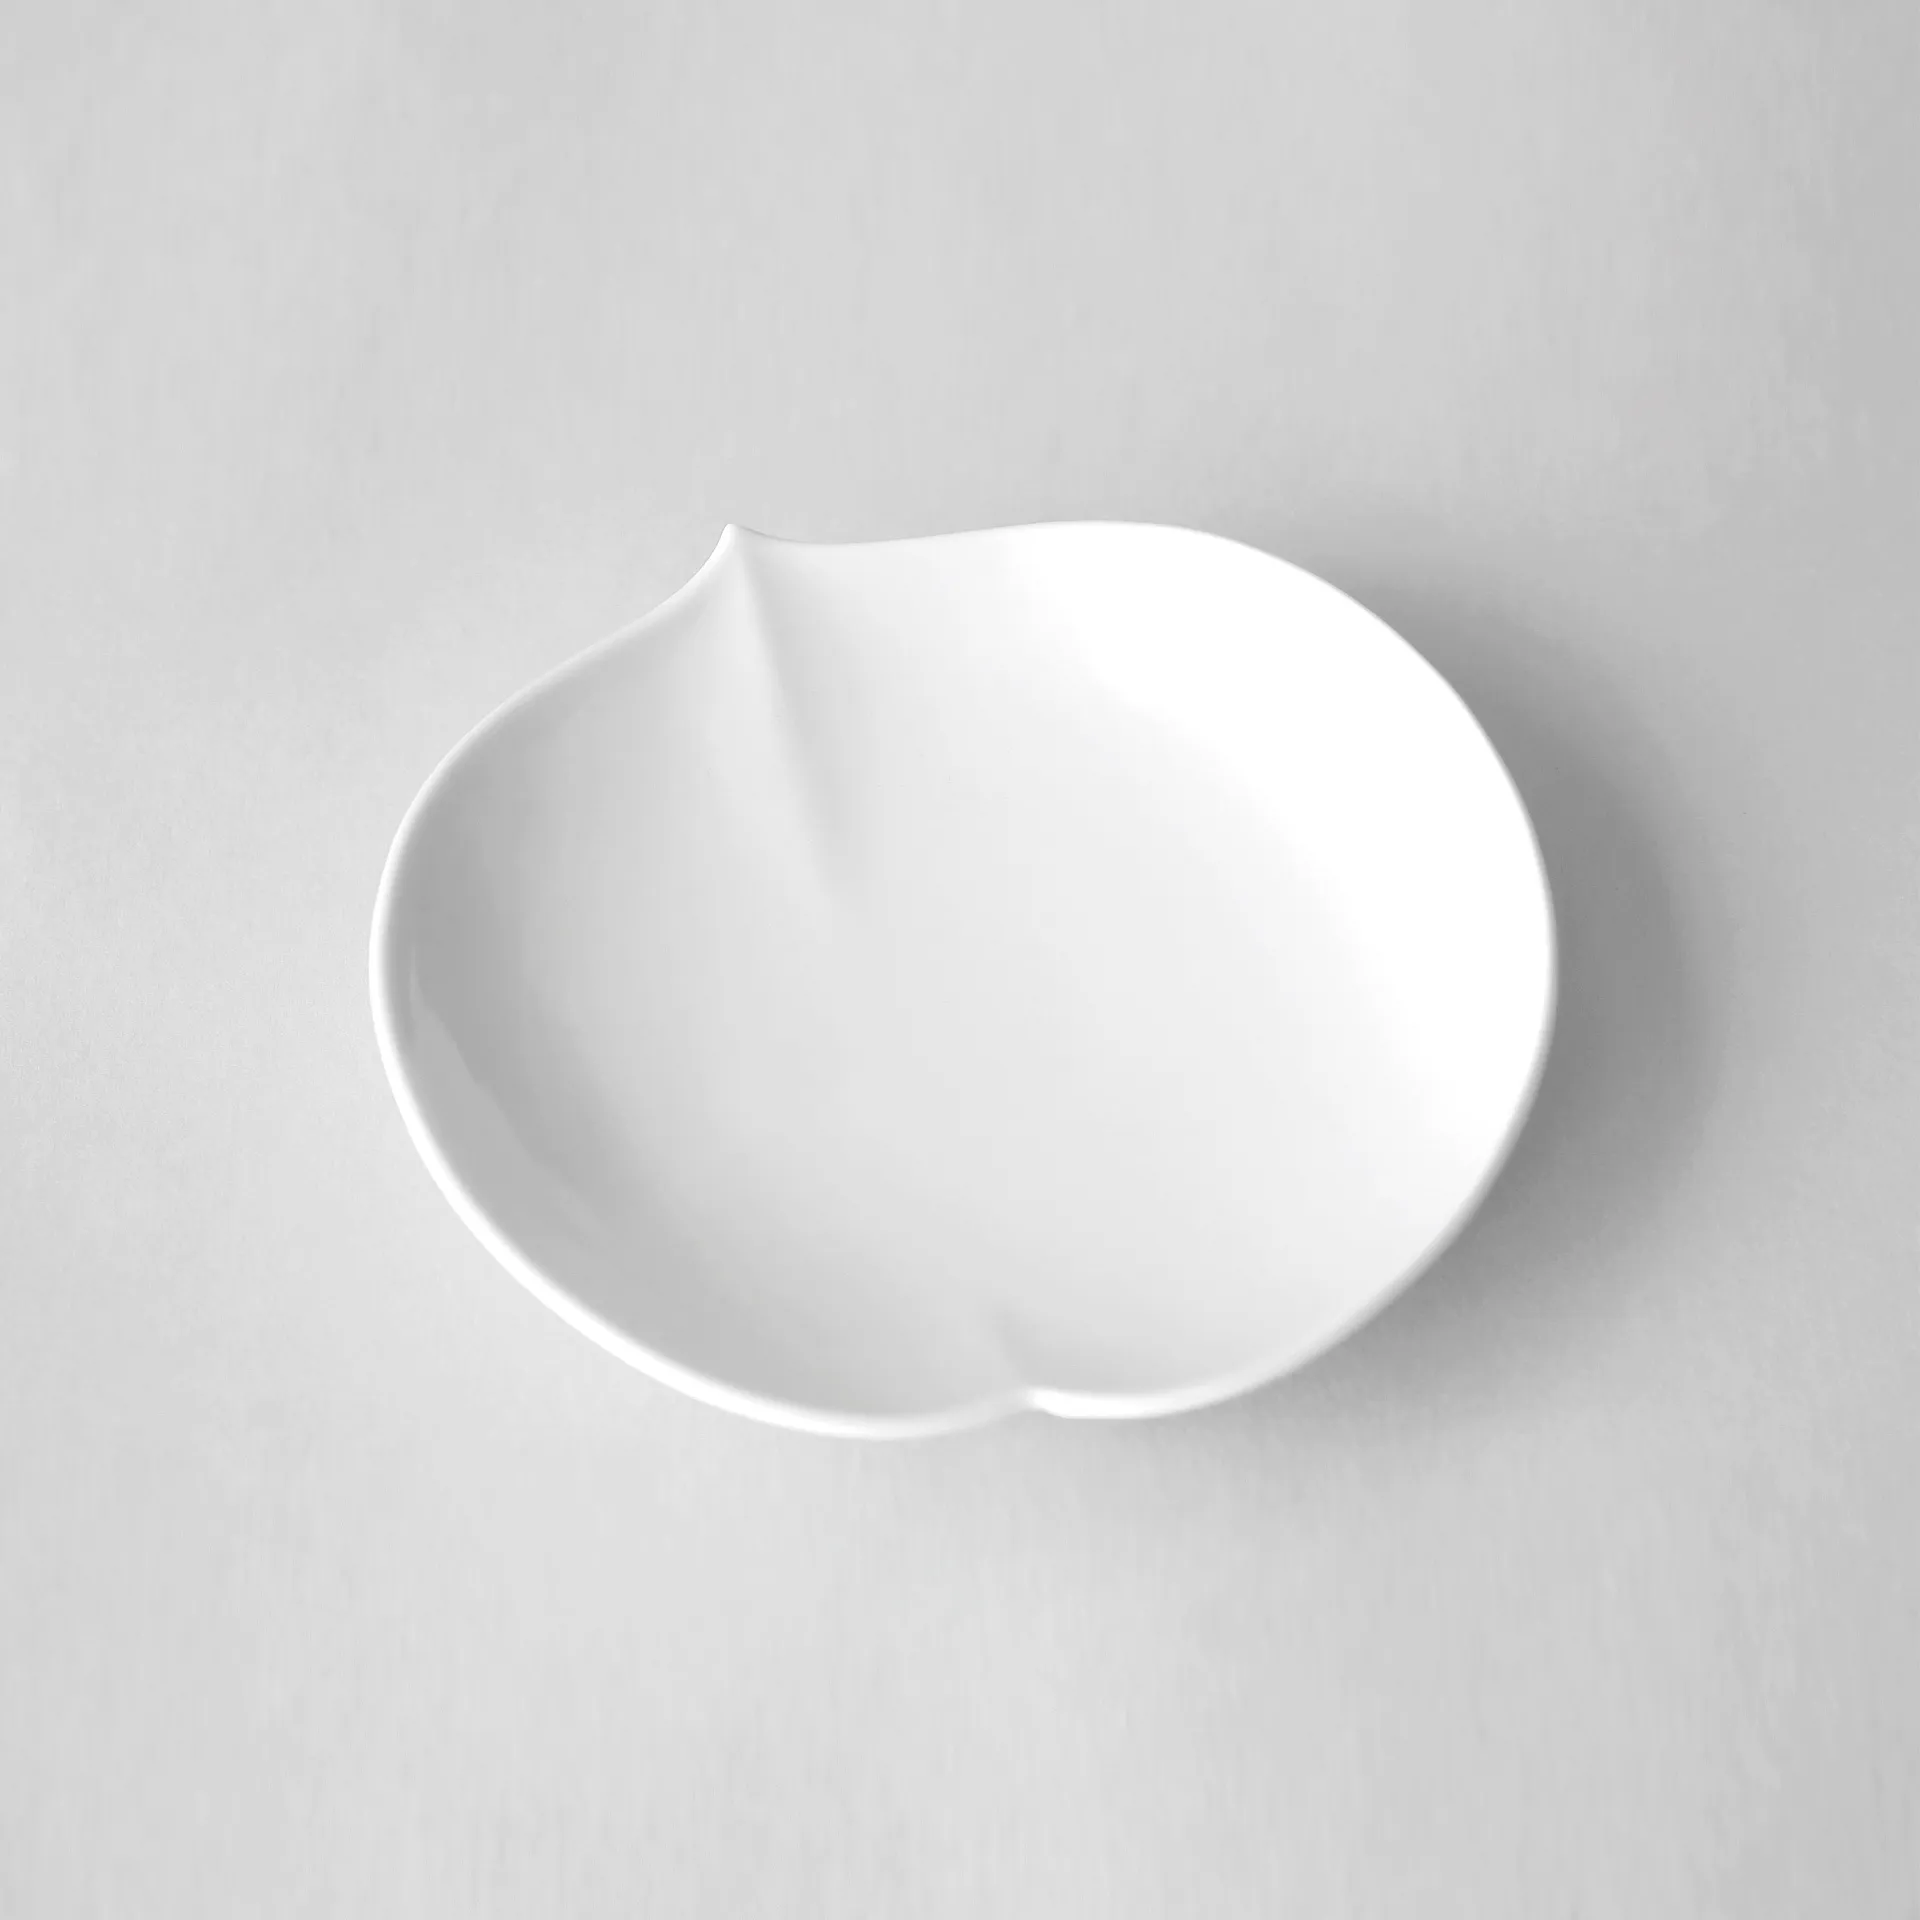 White porcelain small peach dish